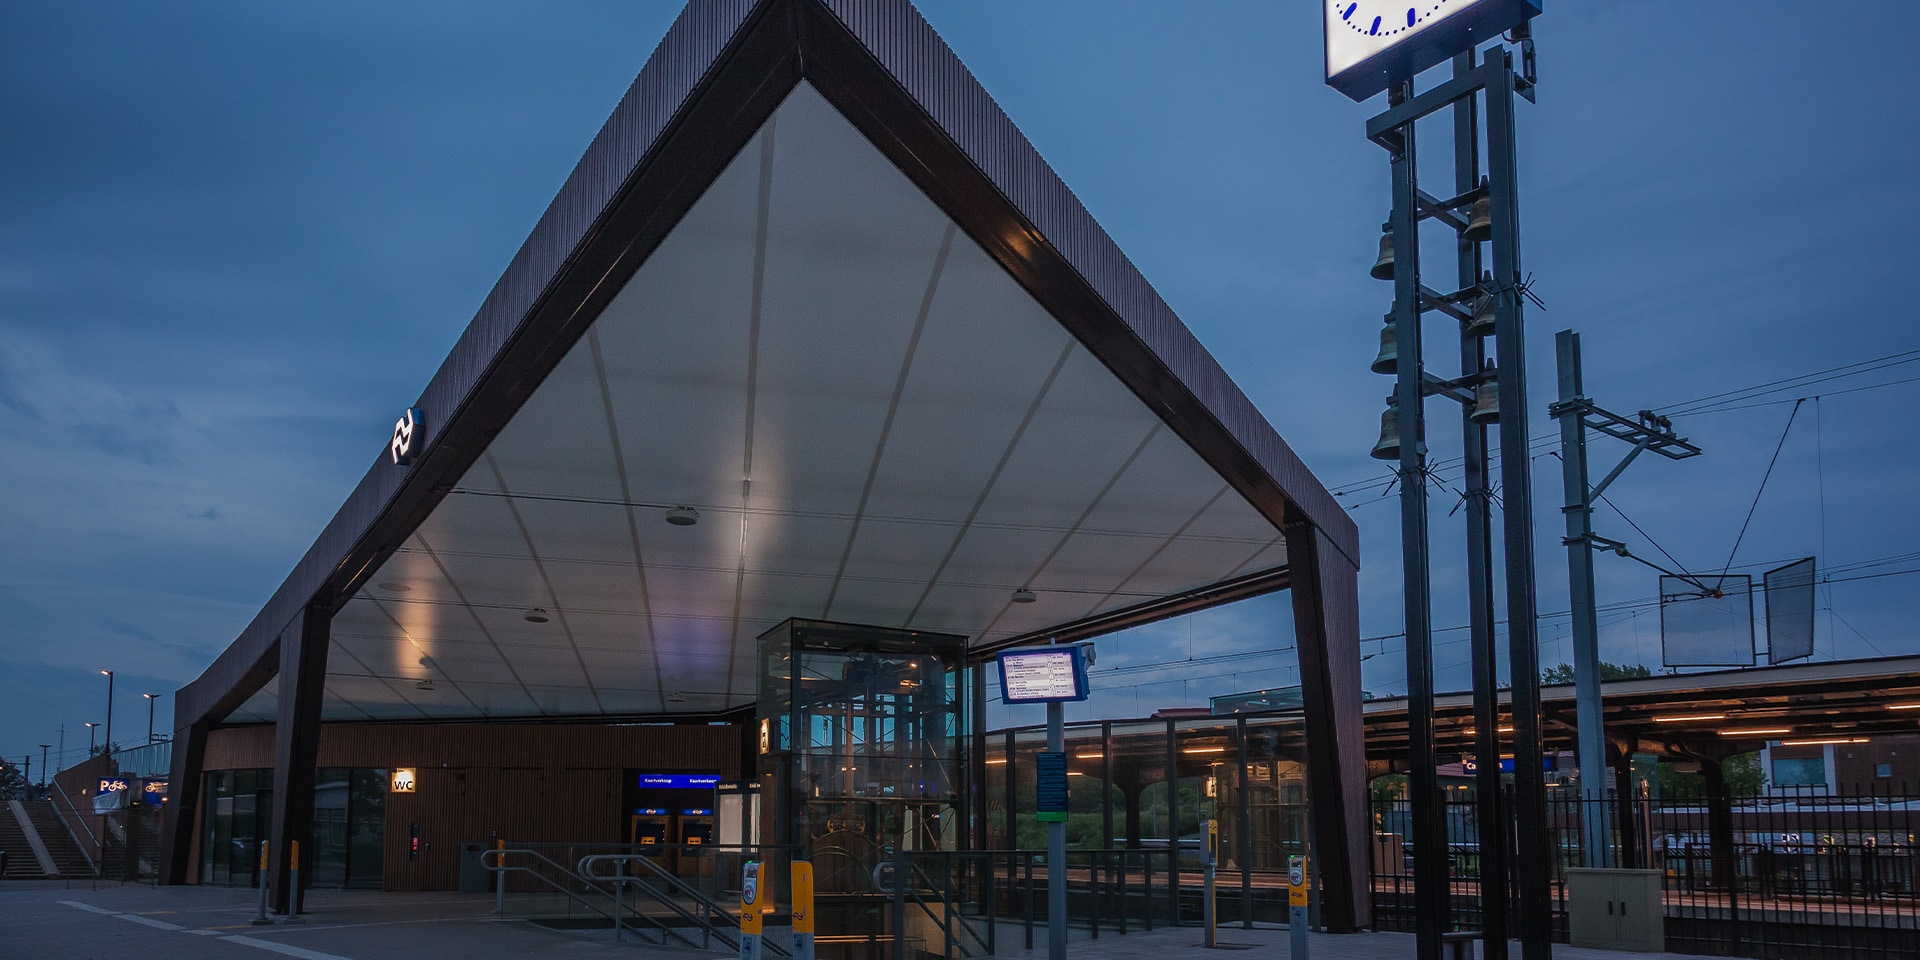 Het station van Castricum in de avond